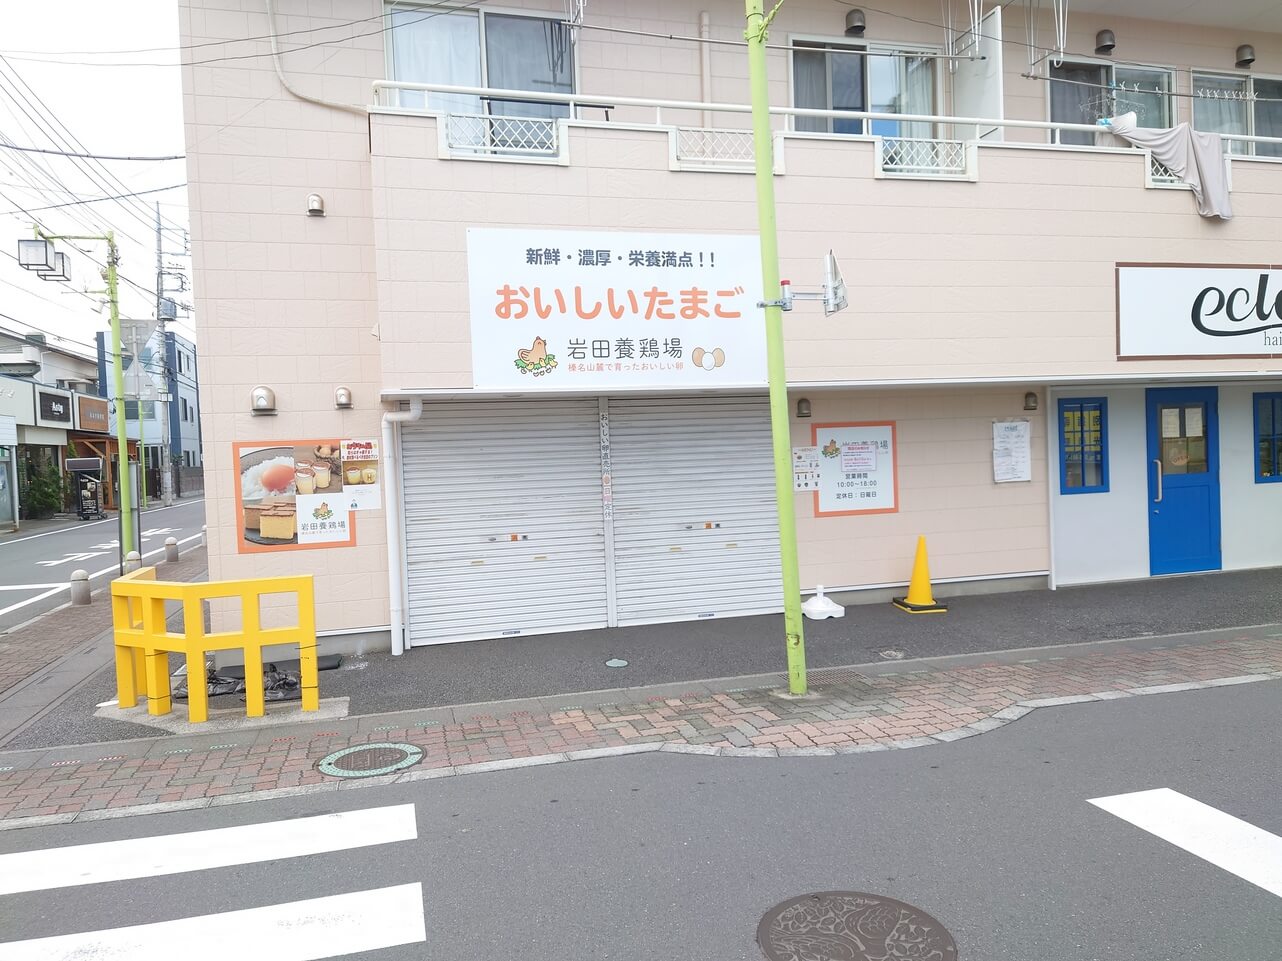 蒲生の岩田養鶏場が閉店するそうです【がやてっく閉店】